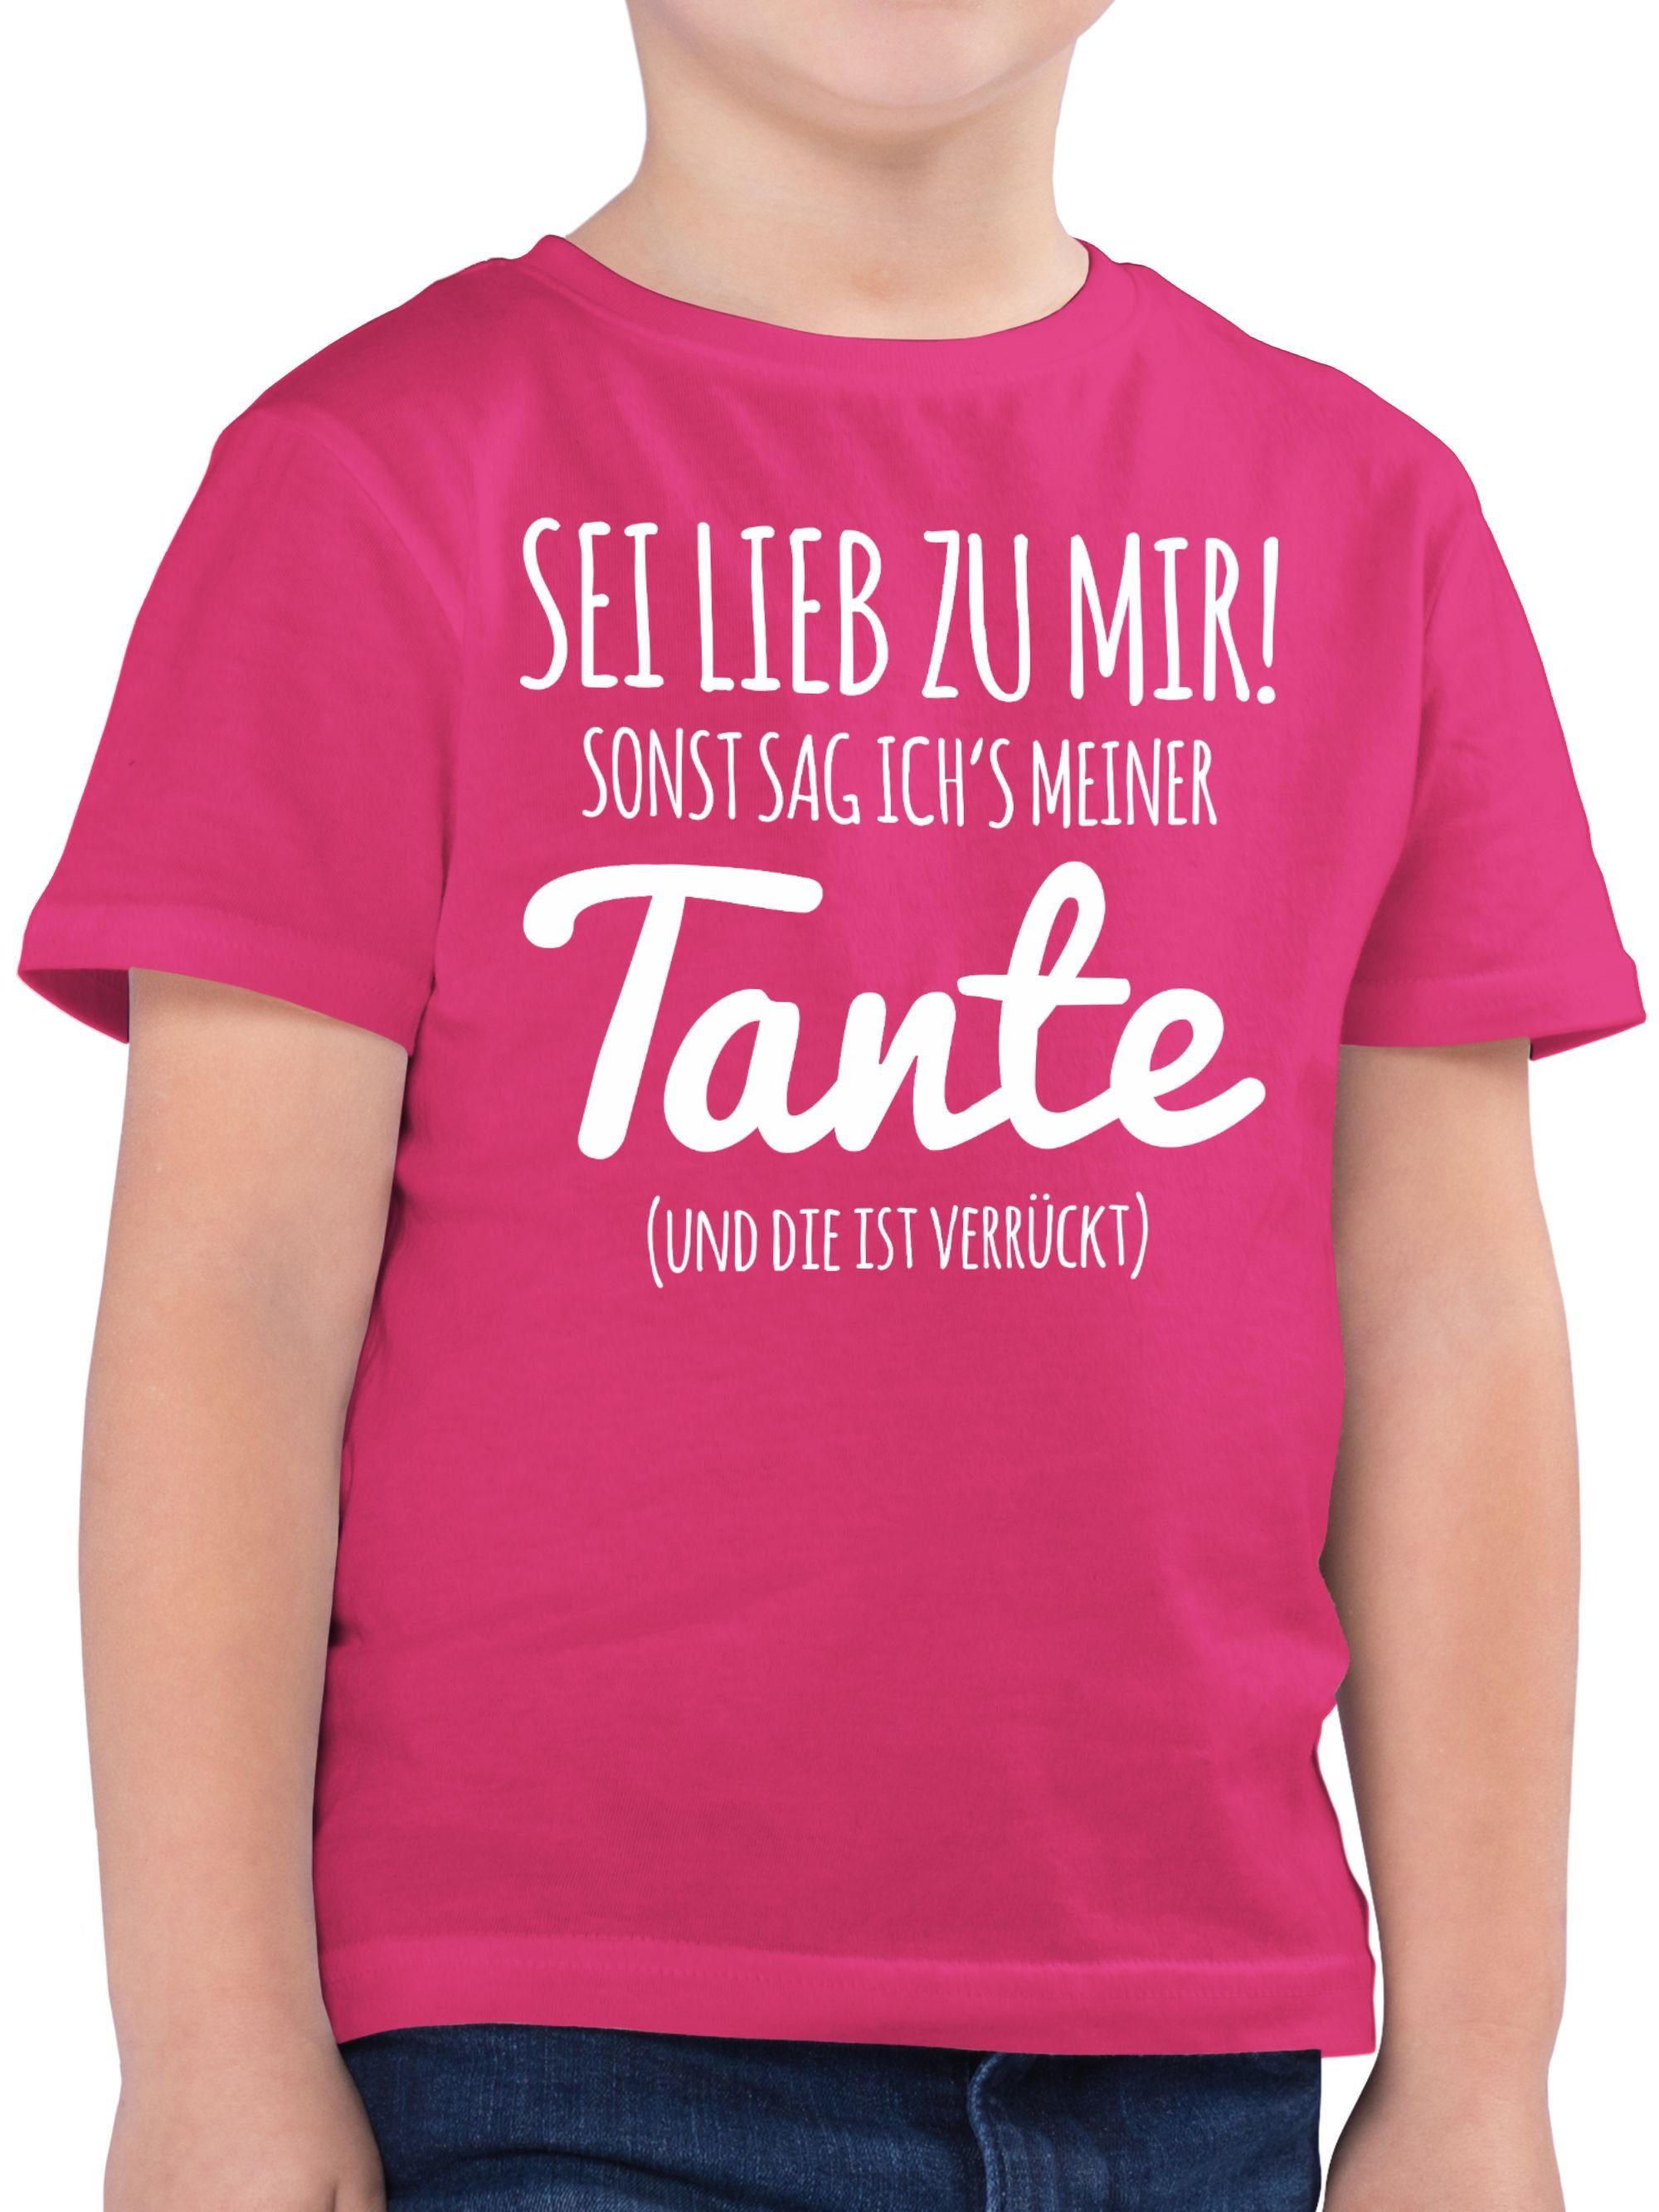 Shirtracer T-Shirt Tante Spruch - Sei lieb zu mir sonst sag ichs meiner Tante Tante 2 Fuchsia